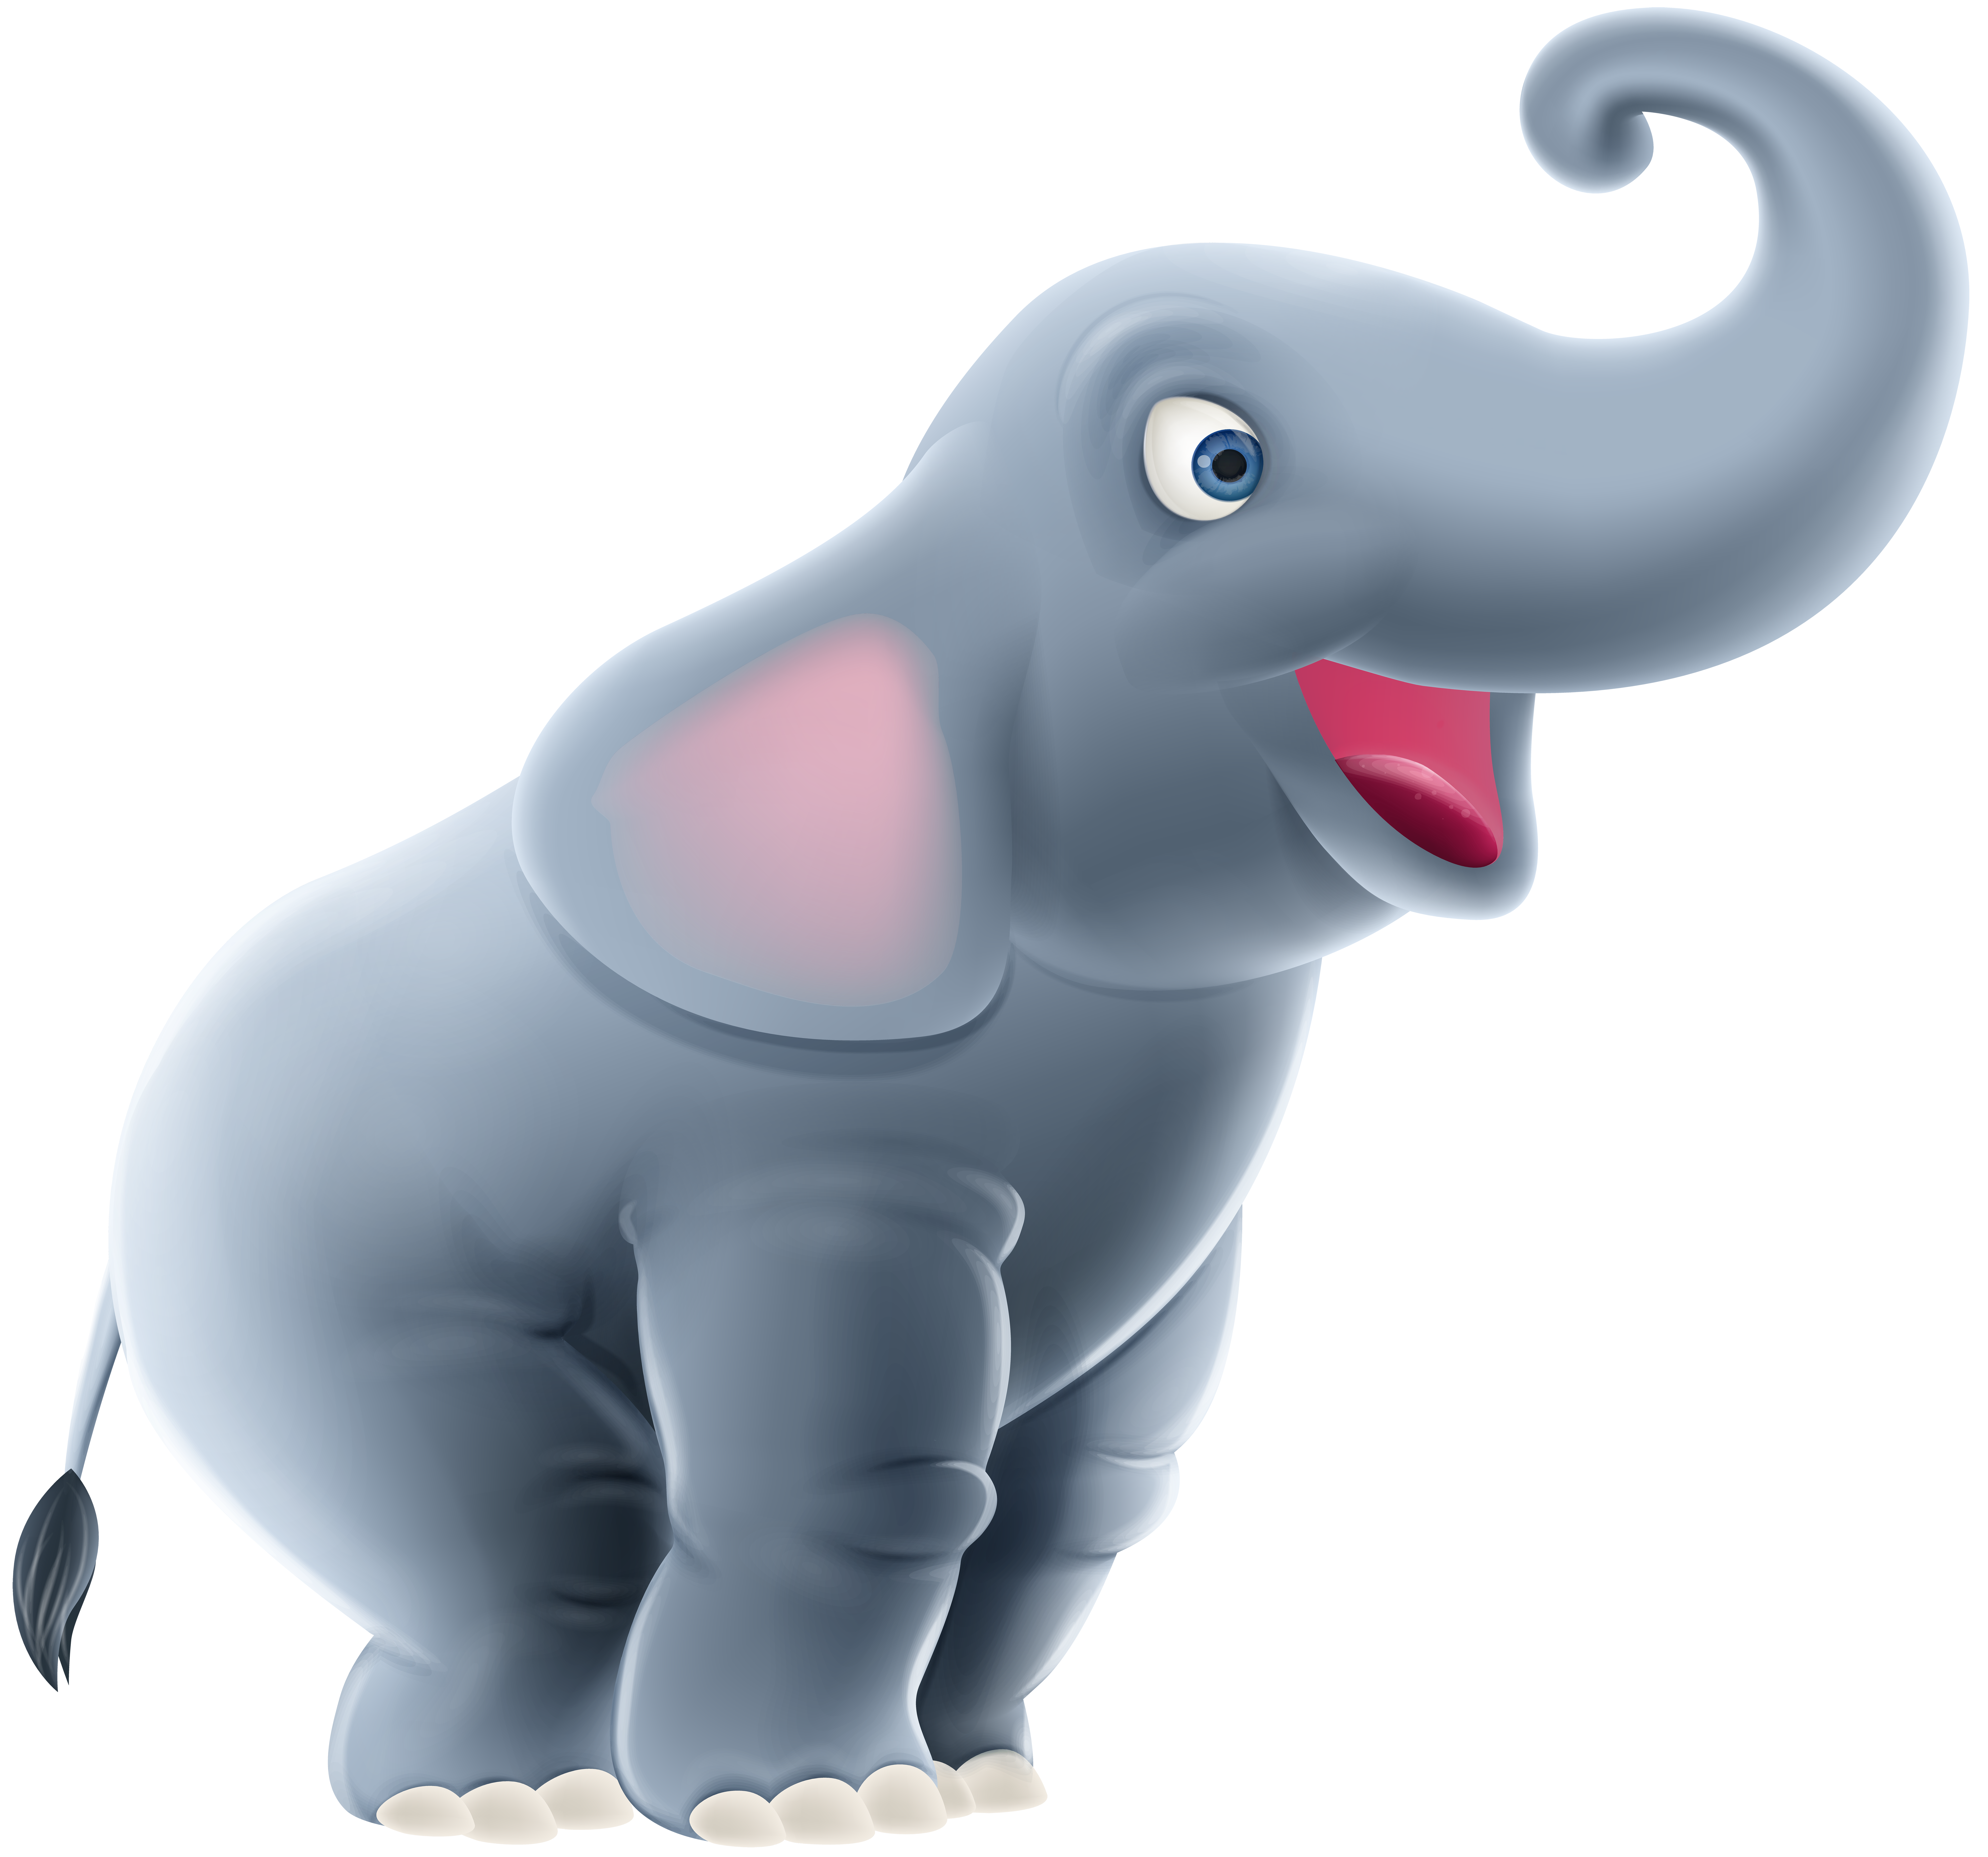 Картинка слона для детей на прозрачном фоне